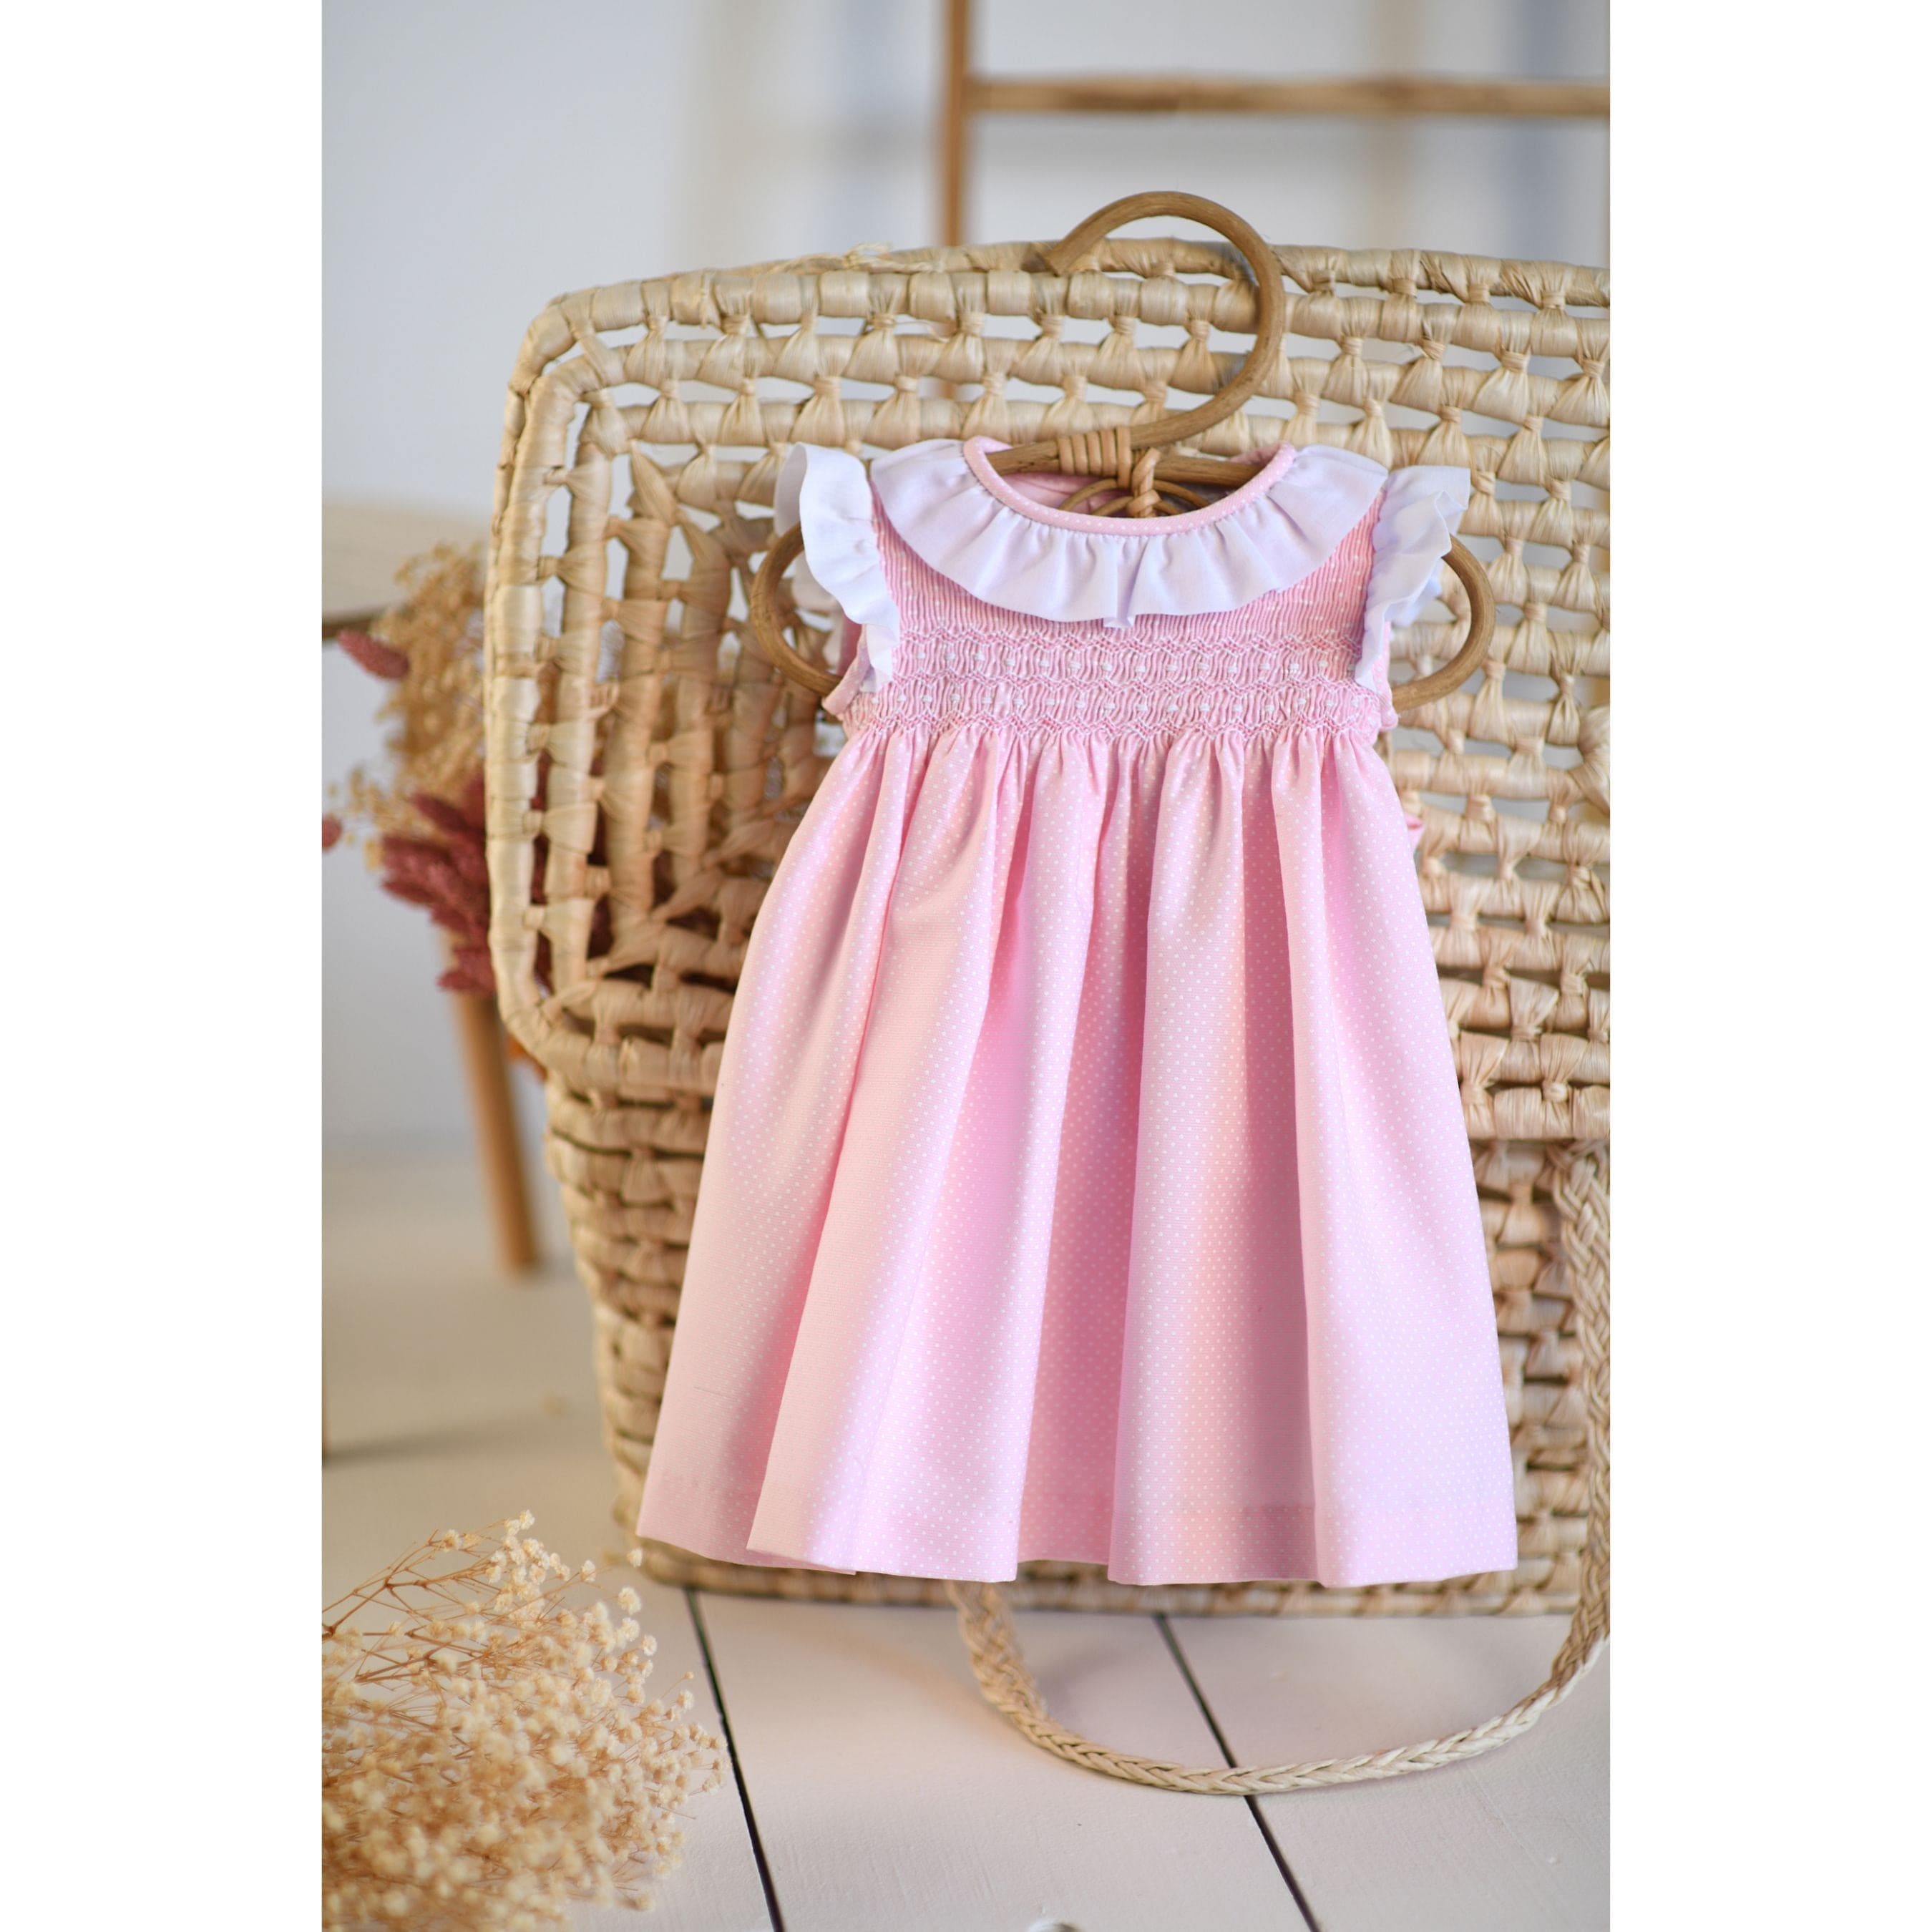 Luna | Gils Pink & White Polka Dot Smocked Dress